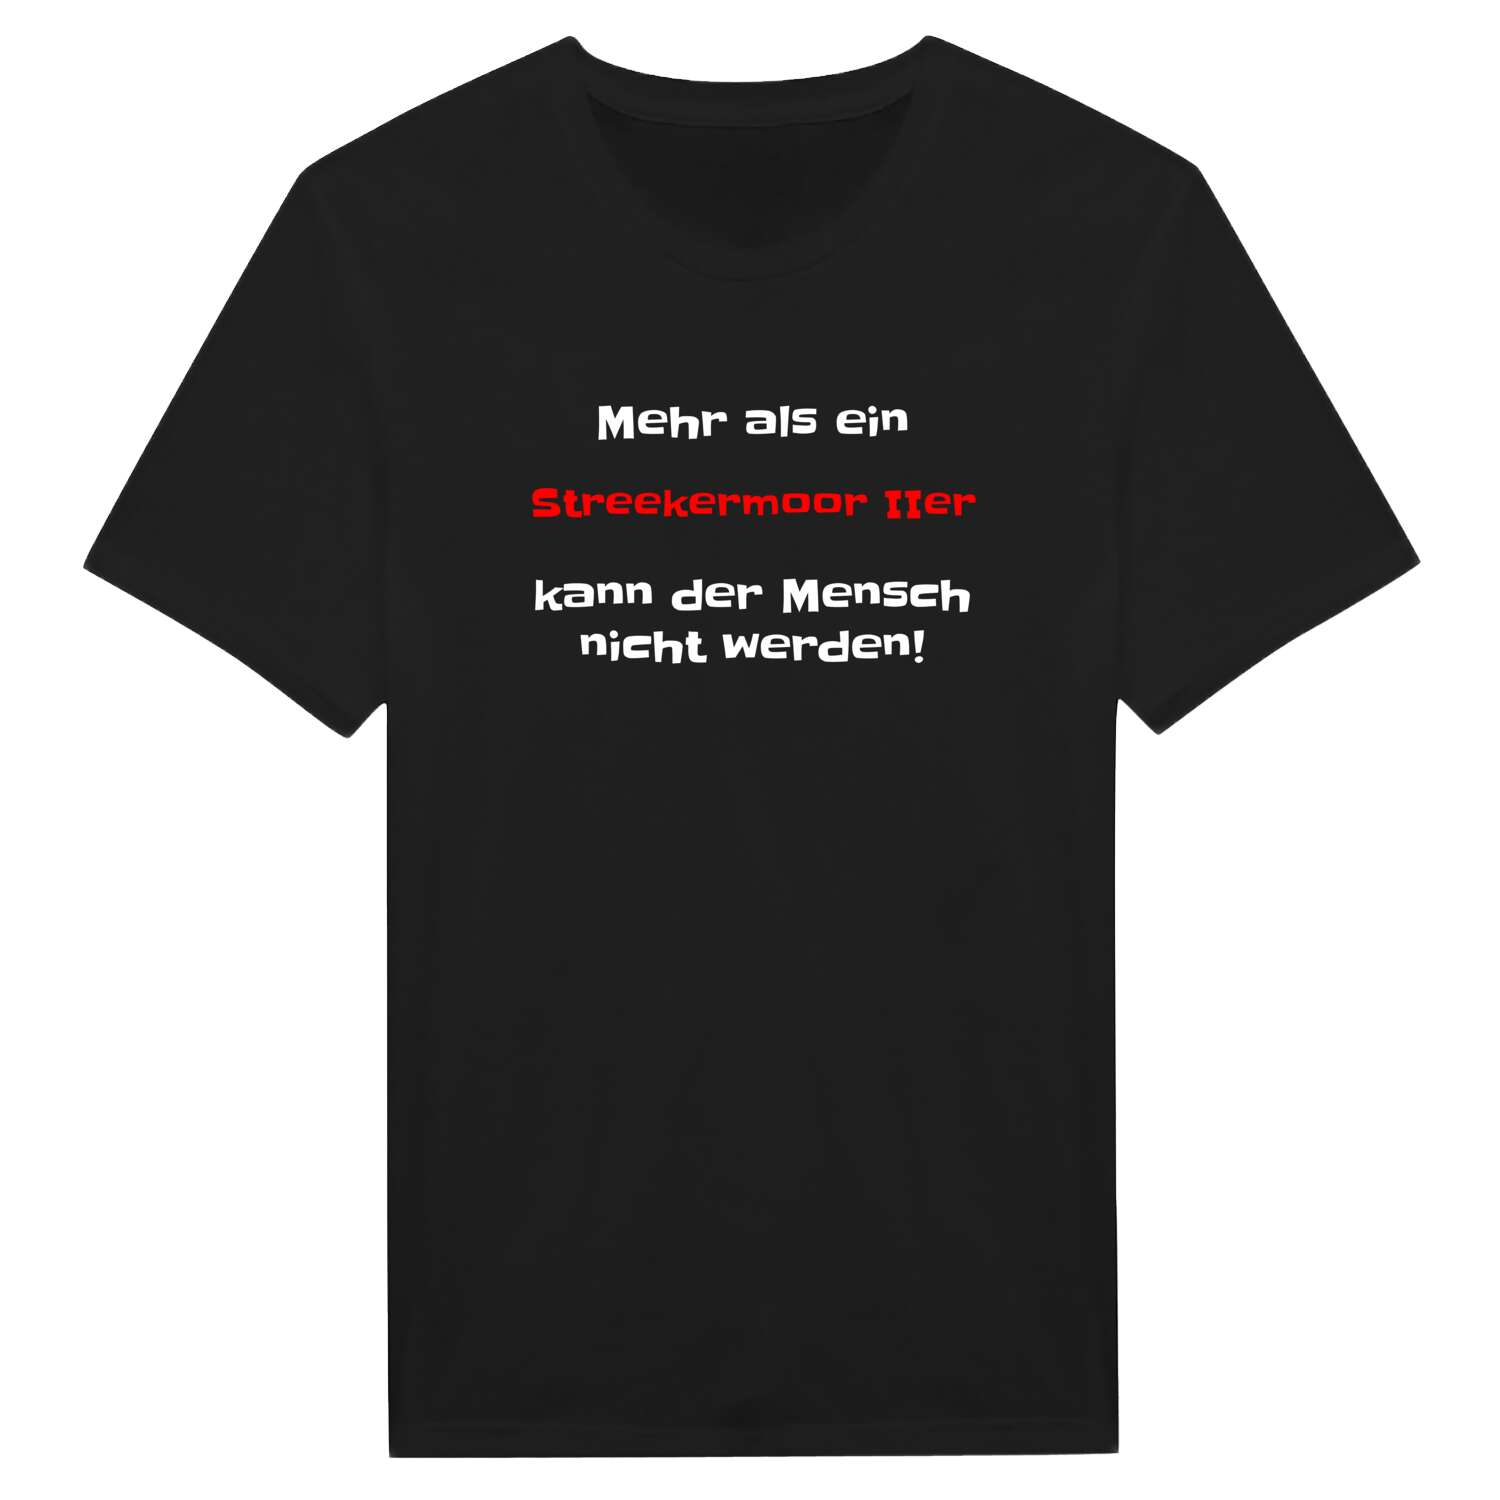 Streekermoor II T-Shirt »Mehr als ein«